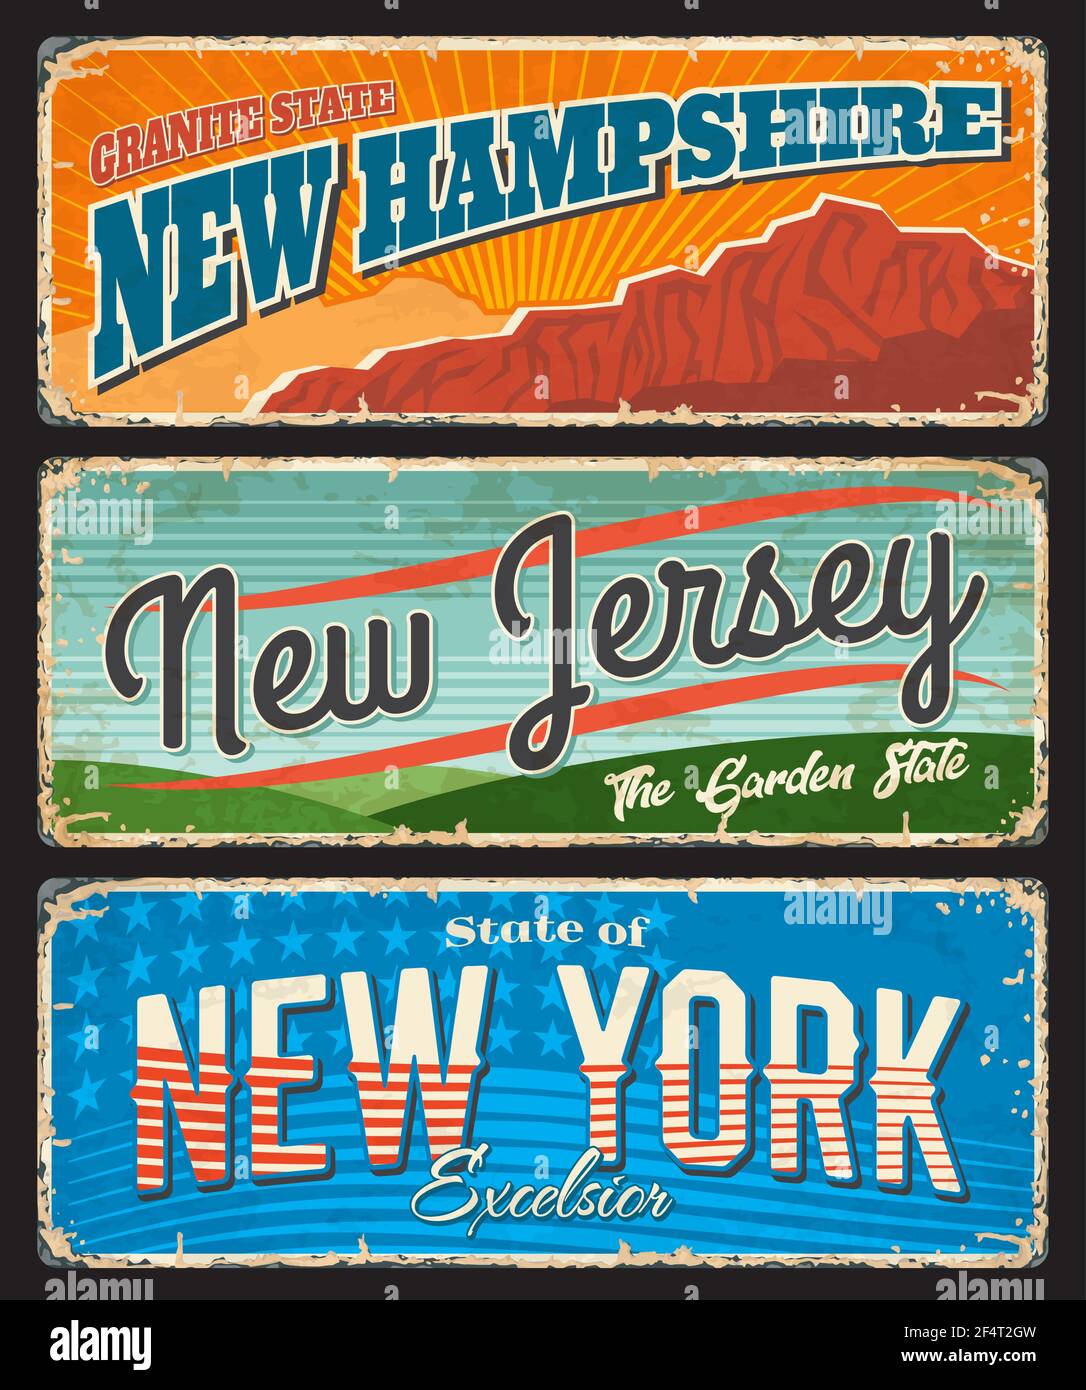 USA Reise-und Tourismus Vektor rostigen Metall Schilder mit New York, New Jersey und New Hampshire amerikanischen Staaten. Garten, Granit und Empire-Staaten von Stock Vektor